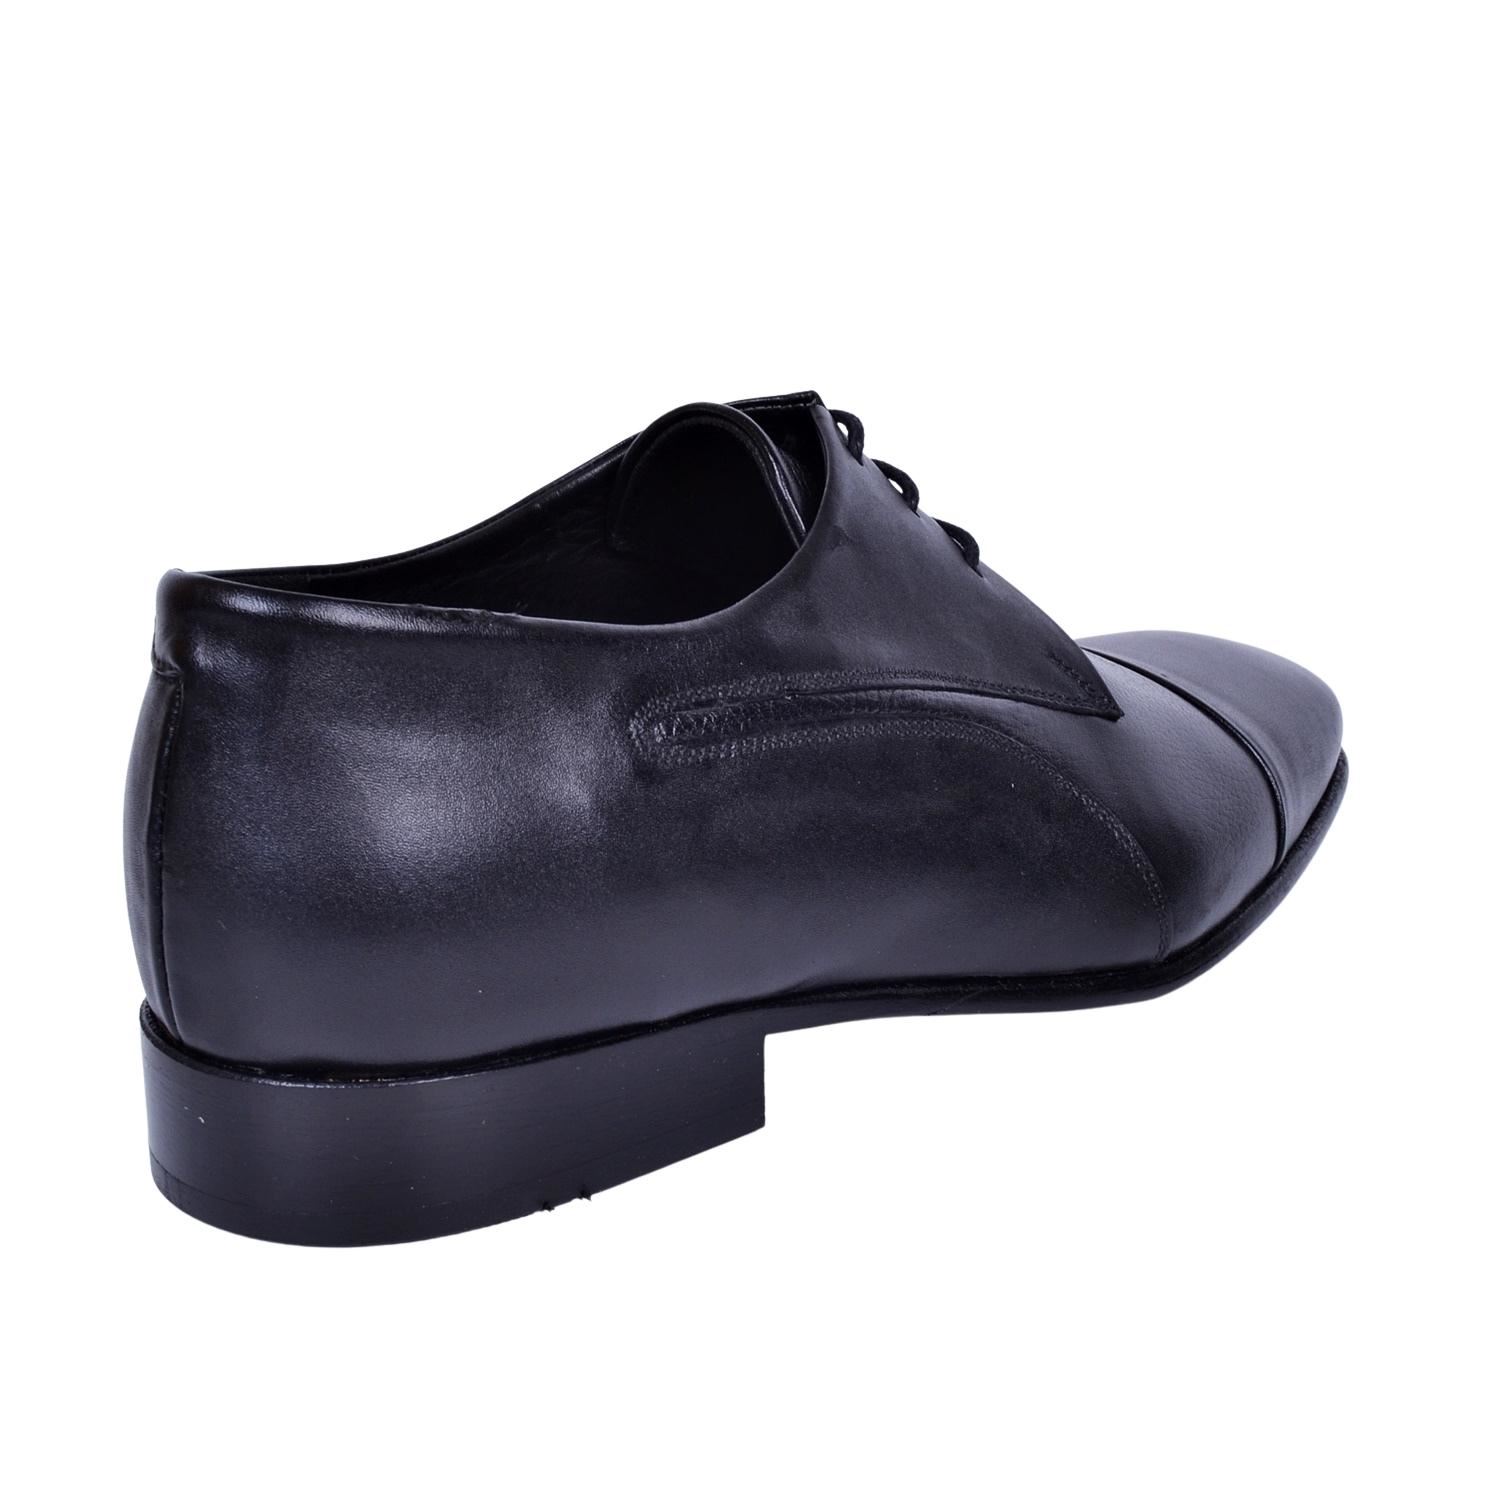 Danacı 704 Kösele Deri Siyah Klasik Ayakkabı